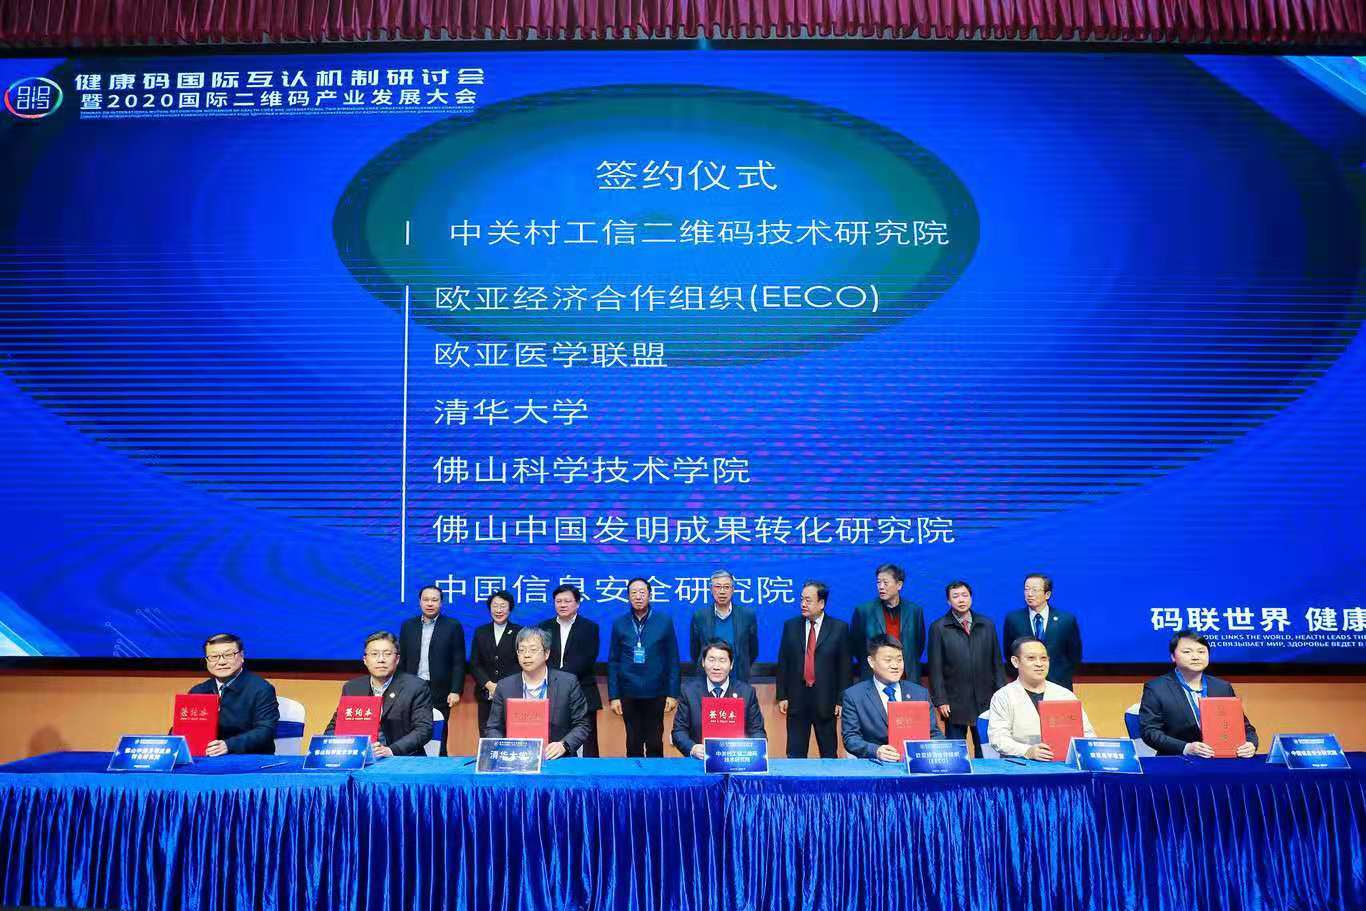 会议期间签订了国际通用二维码体系多个国际间应用合作协议和基础创新研究合作协议。